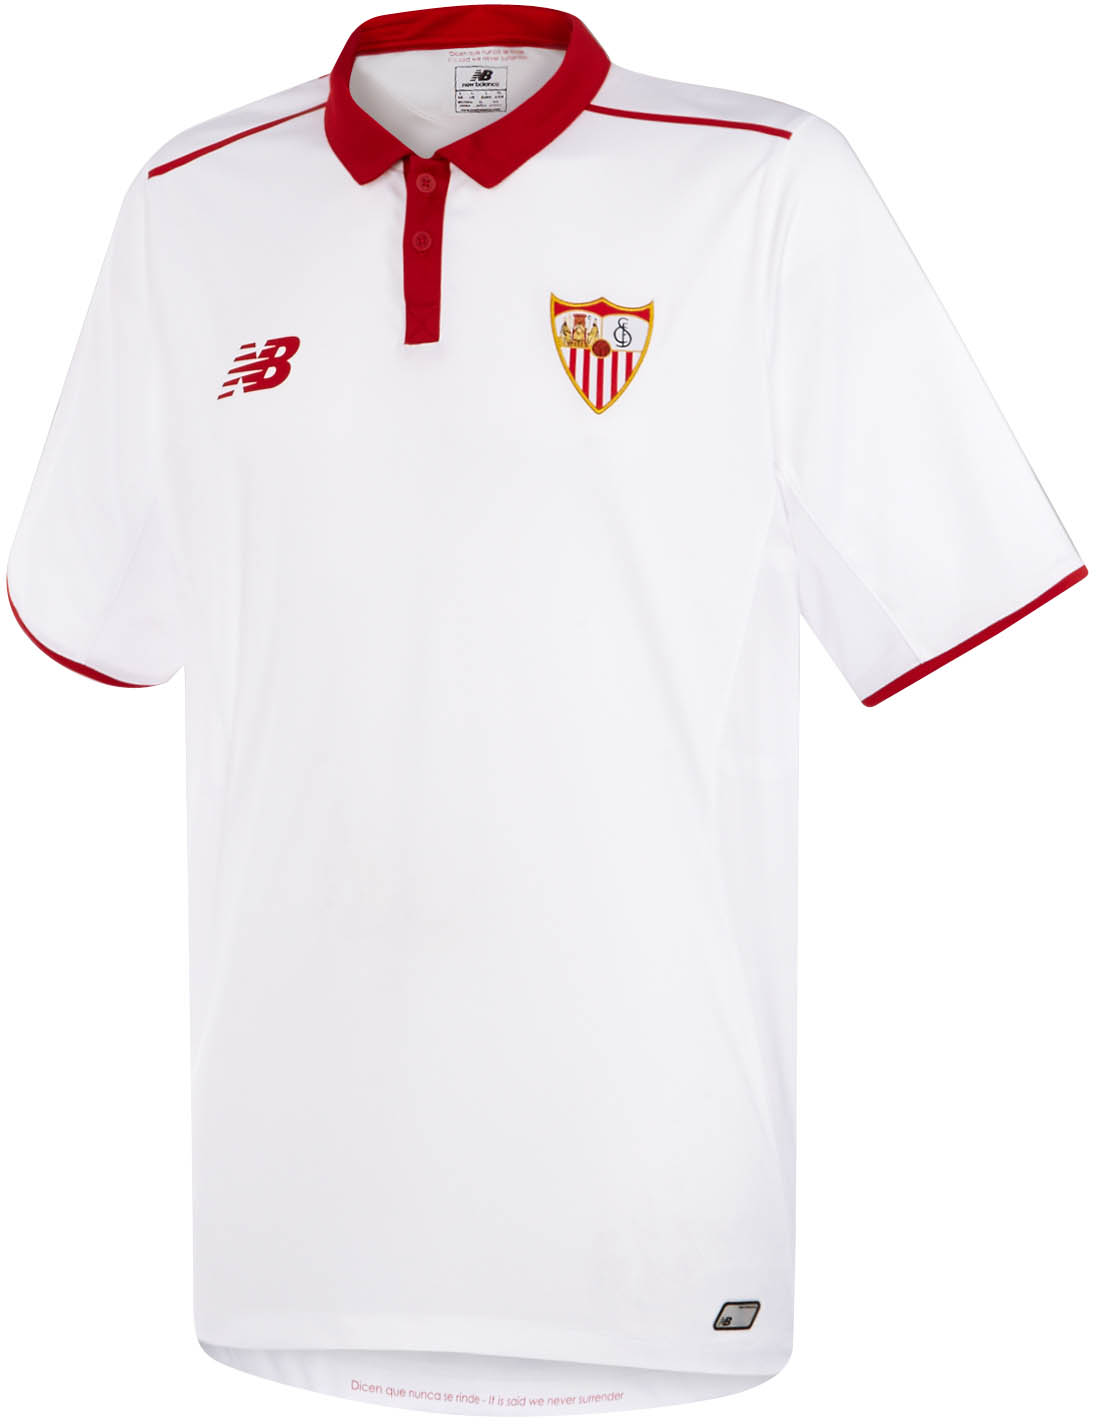 Jual Jersey Original: Sevilla FC Jersey Kit 2016 / 2017